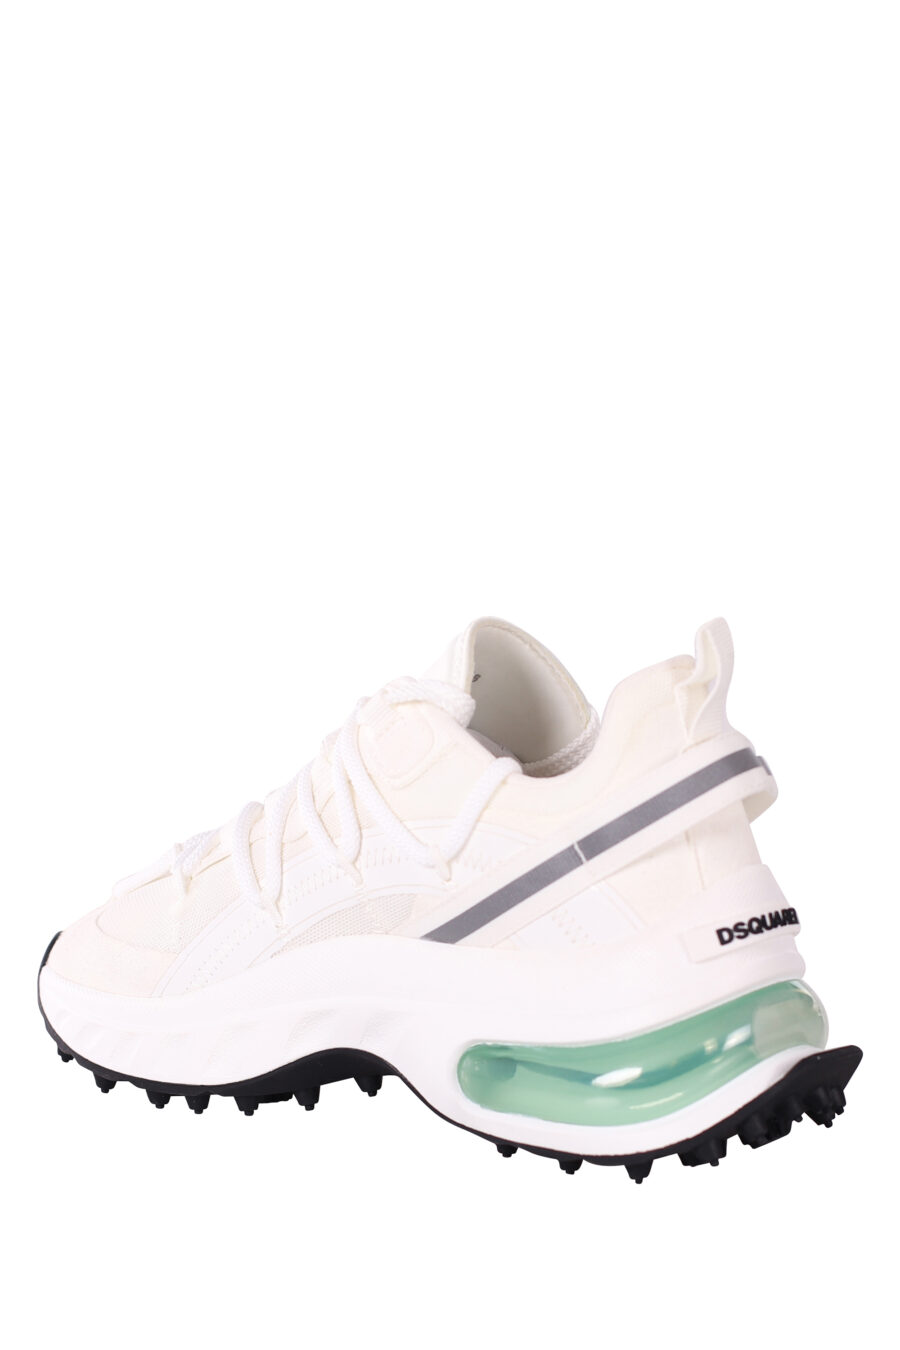 Zapatillas blancas con camara de aire verde - IMG 5839